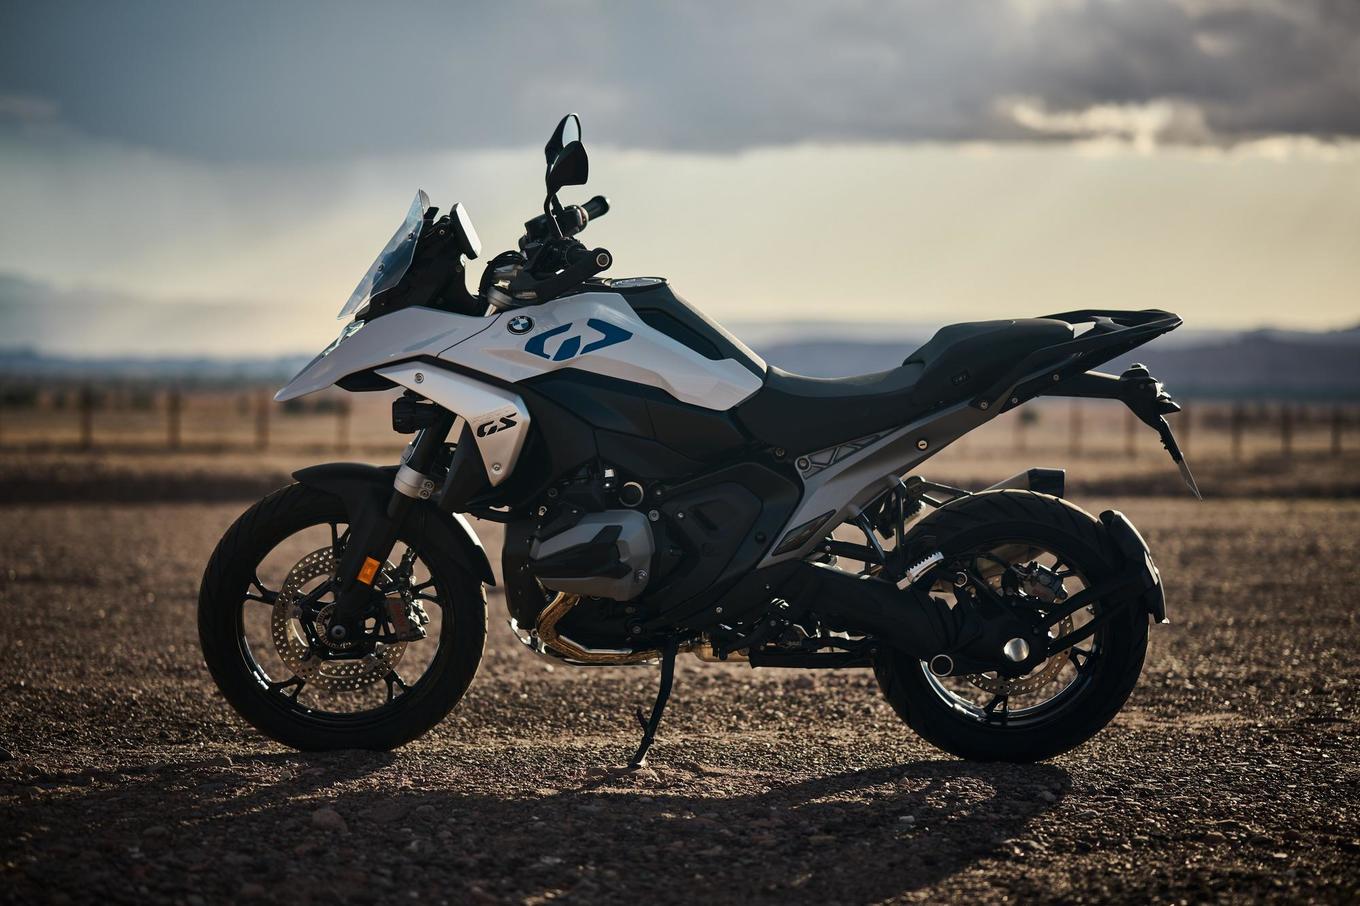 全新r 1300 gs首发,宝马摩托车推出新纯电动踏板摩托车